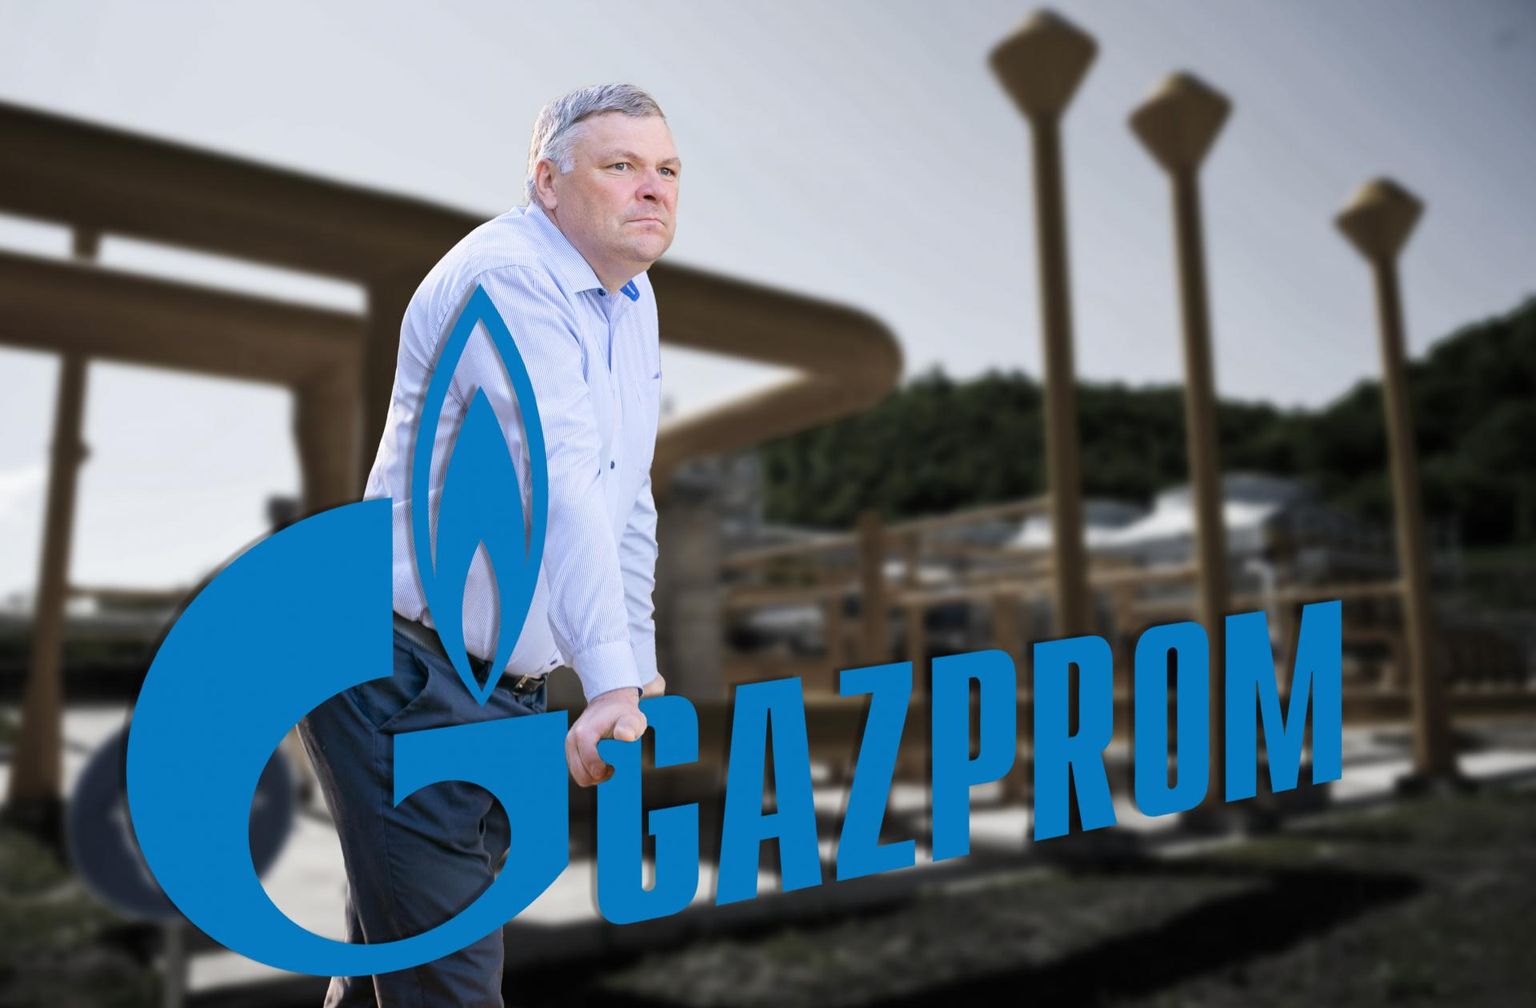 L'ancien ministre de l'environnement Marko Pomerants ("Puisque les retraités sont les plus vulnérables quant à leur subsistance) of the Powerhouse PR firm is lobbying for Russia’s Gazprom Neft.